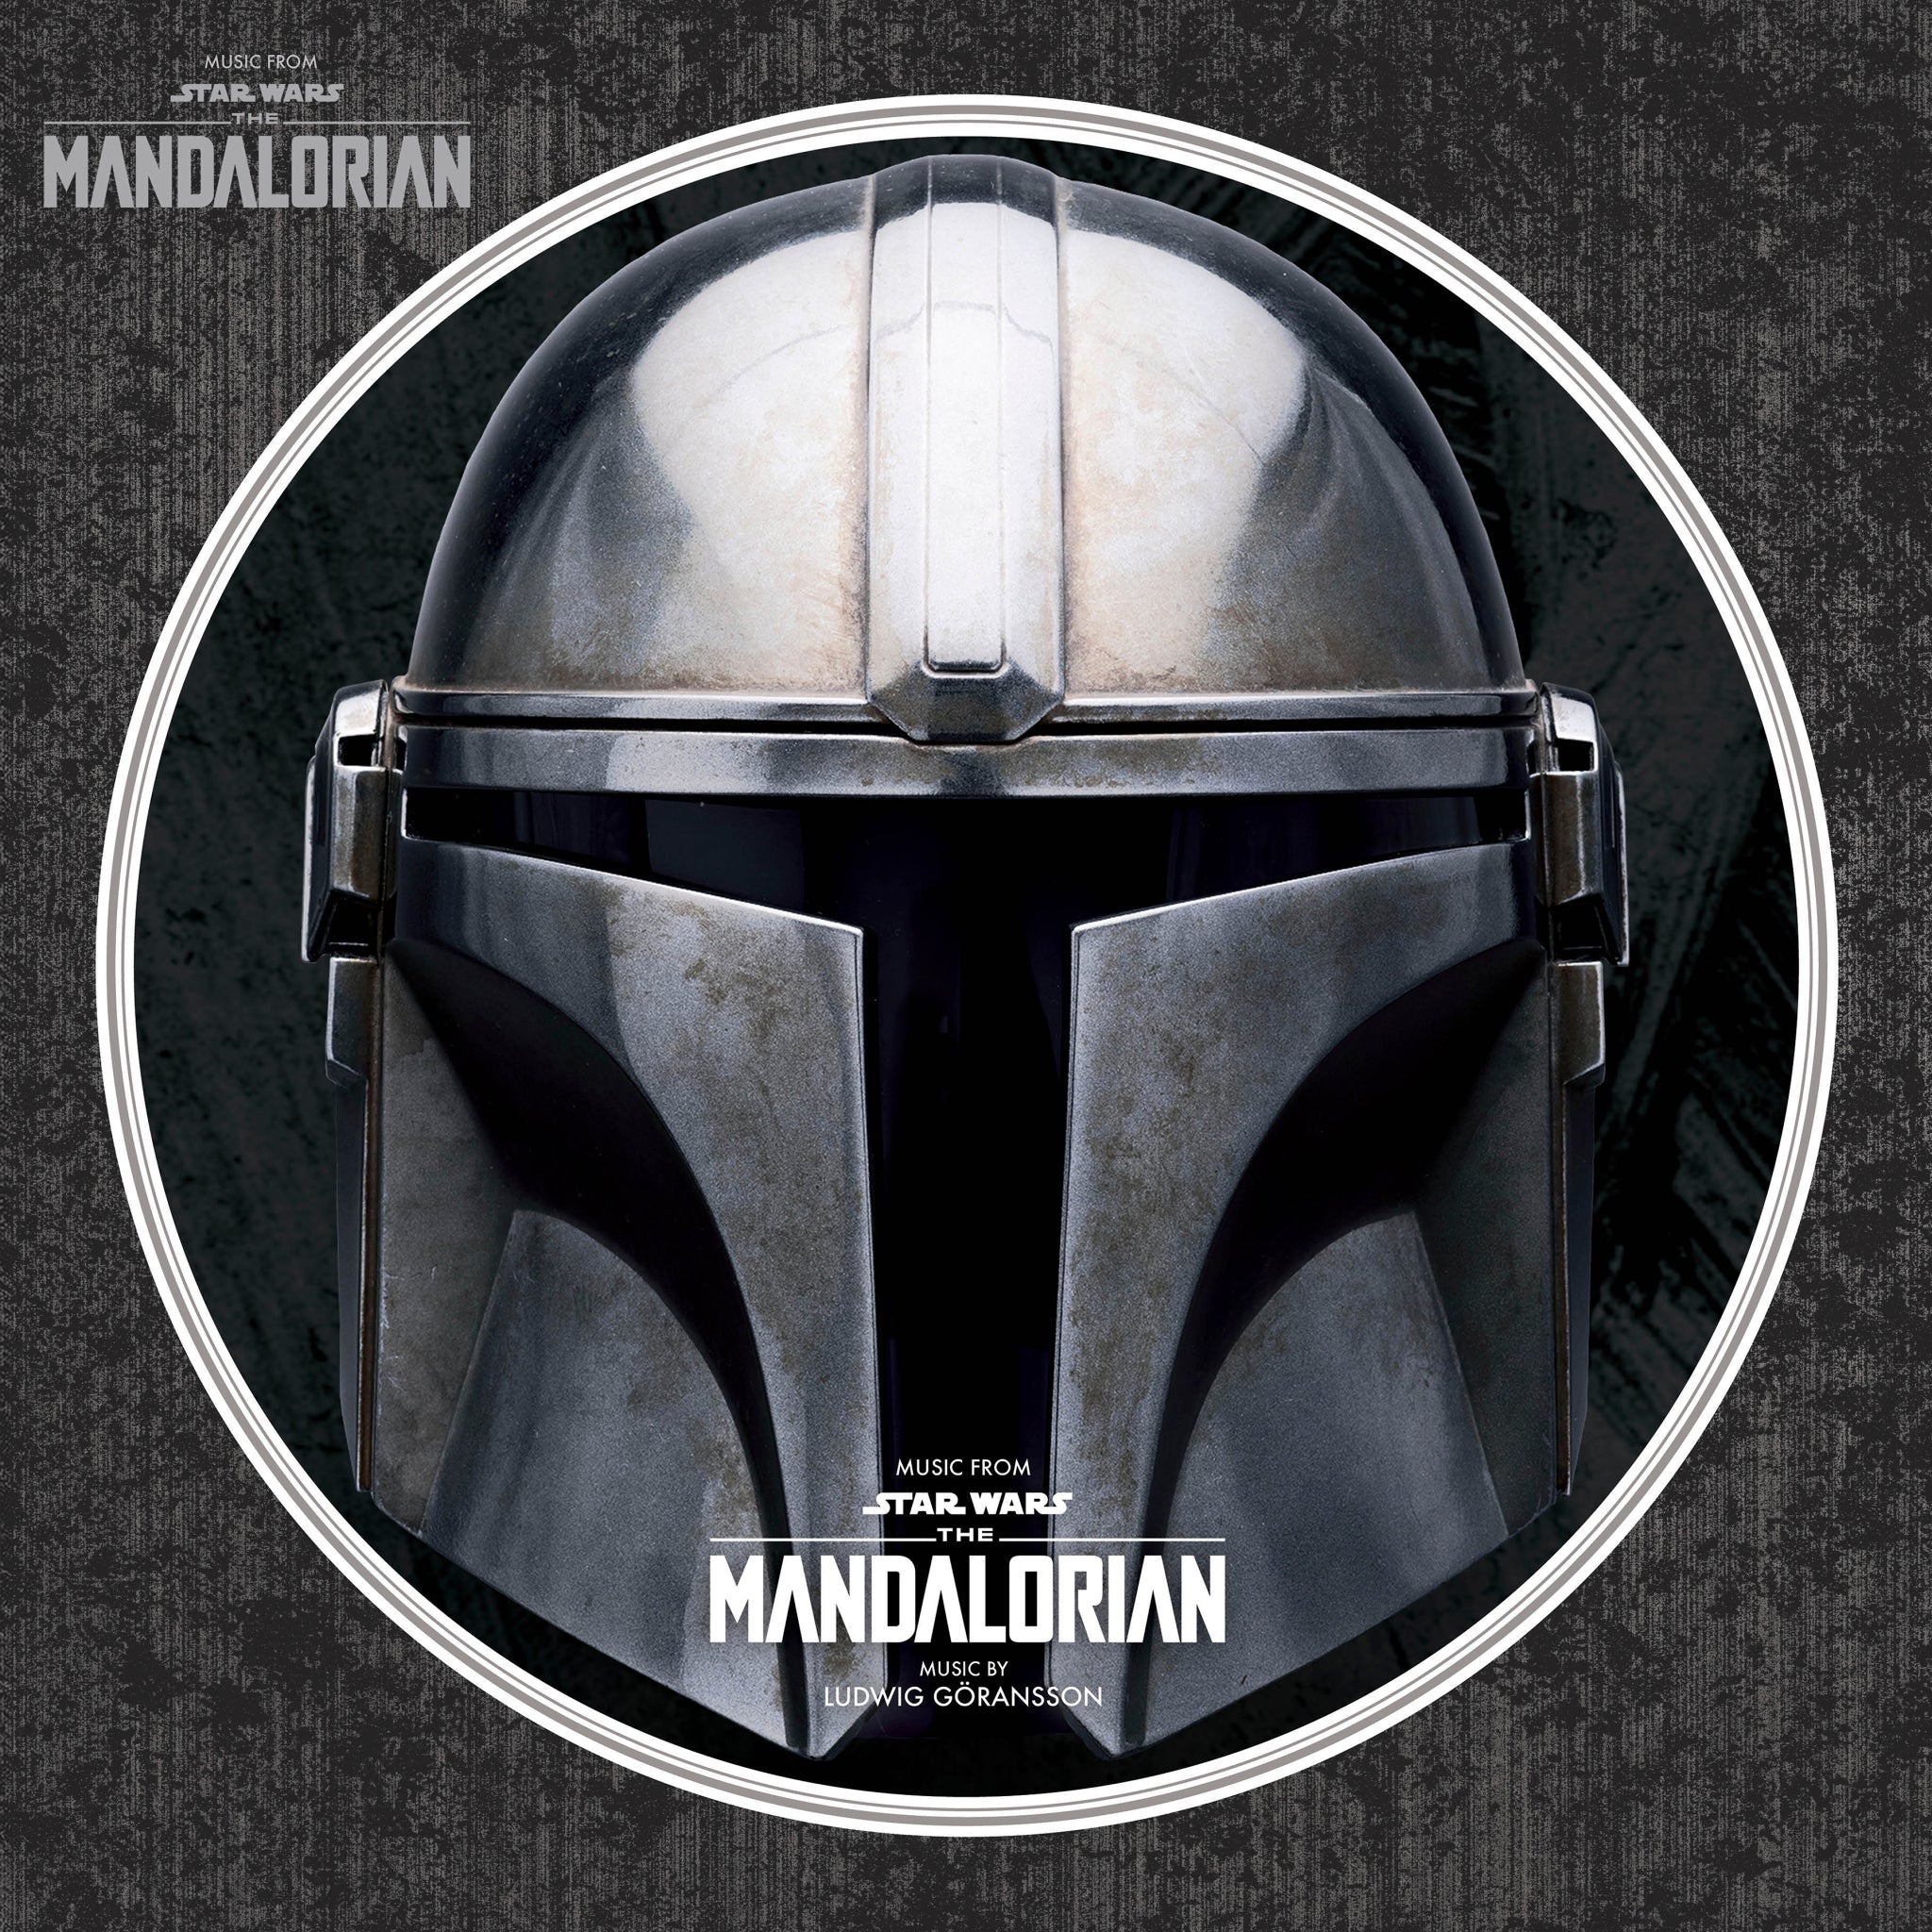 Ludwig Göransson - The Mandalorian: Picture Disc Vinyl LP